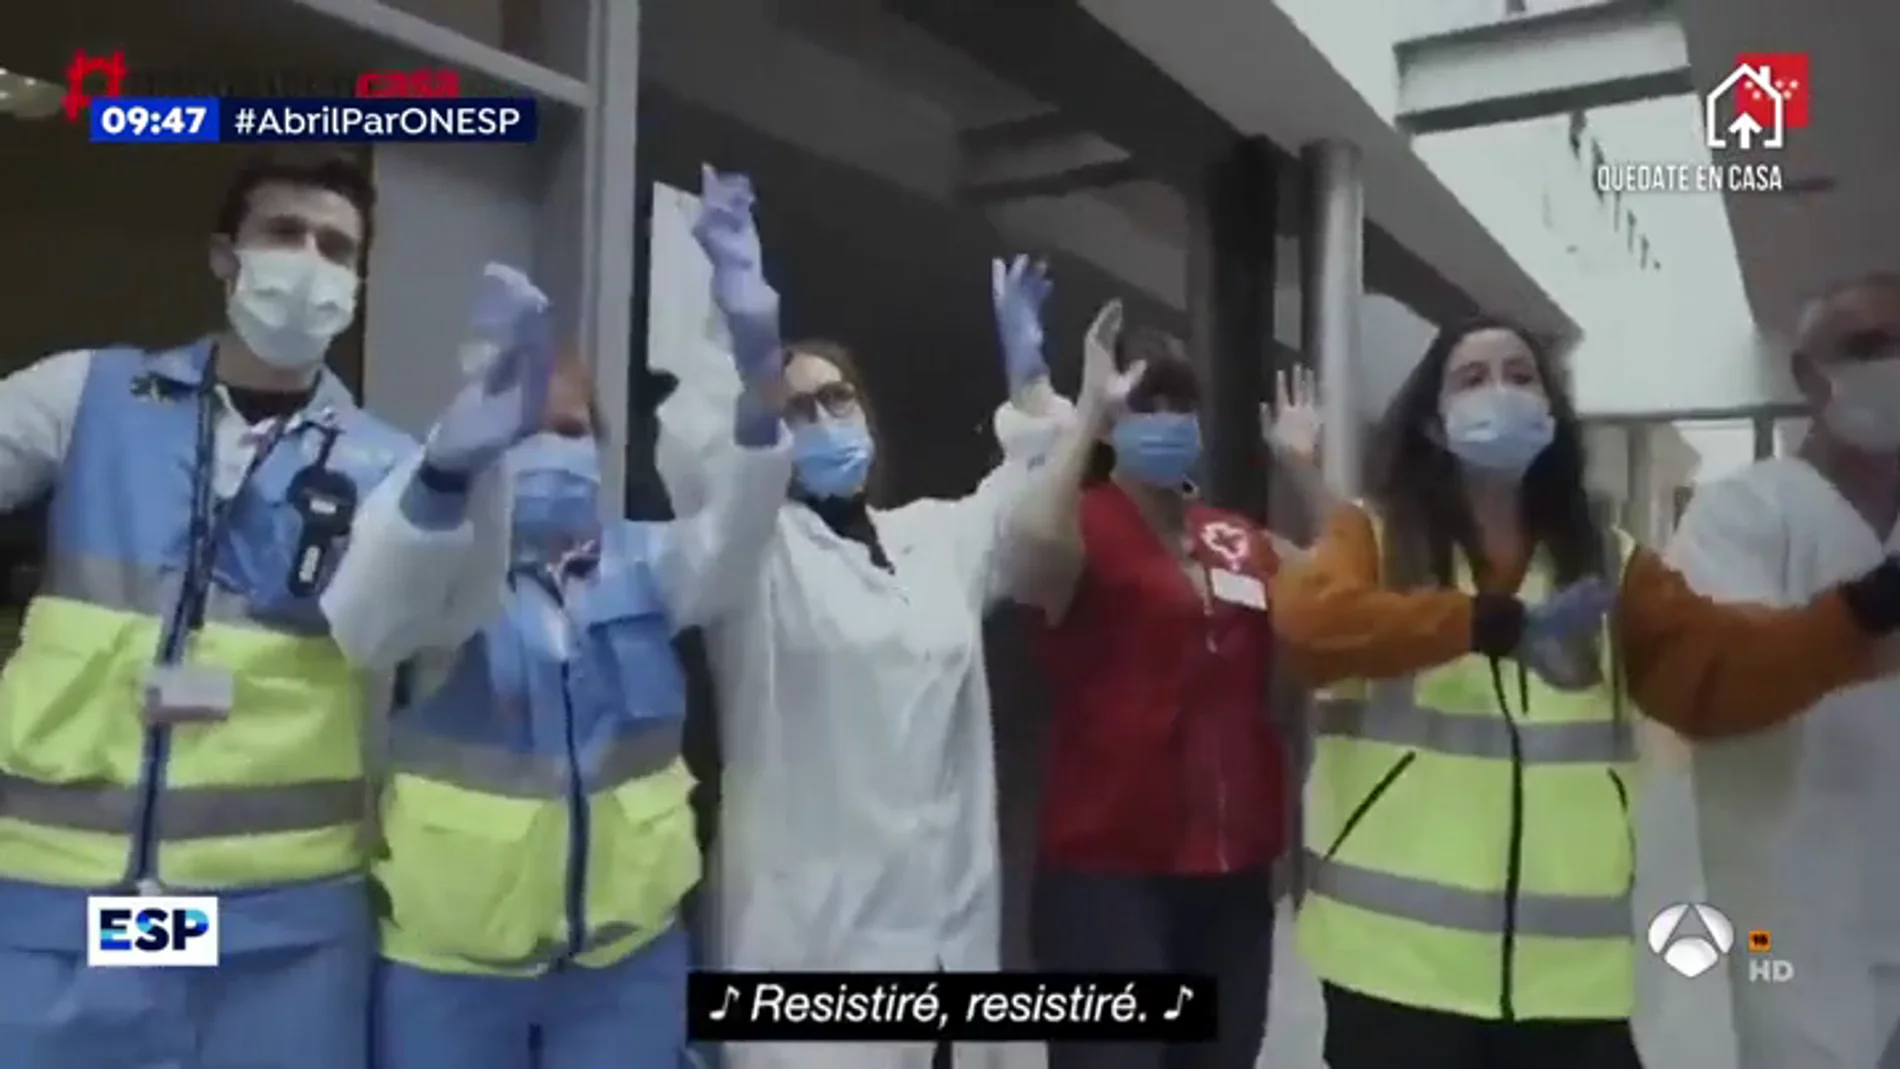 El emotivo vídeo de la lucha de Madrid contra el coronavirus que ha emocionado a los internautas